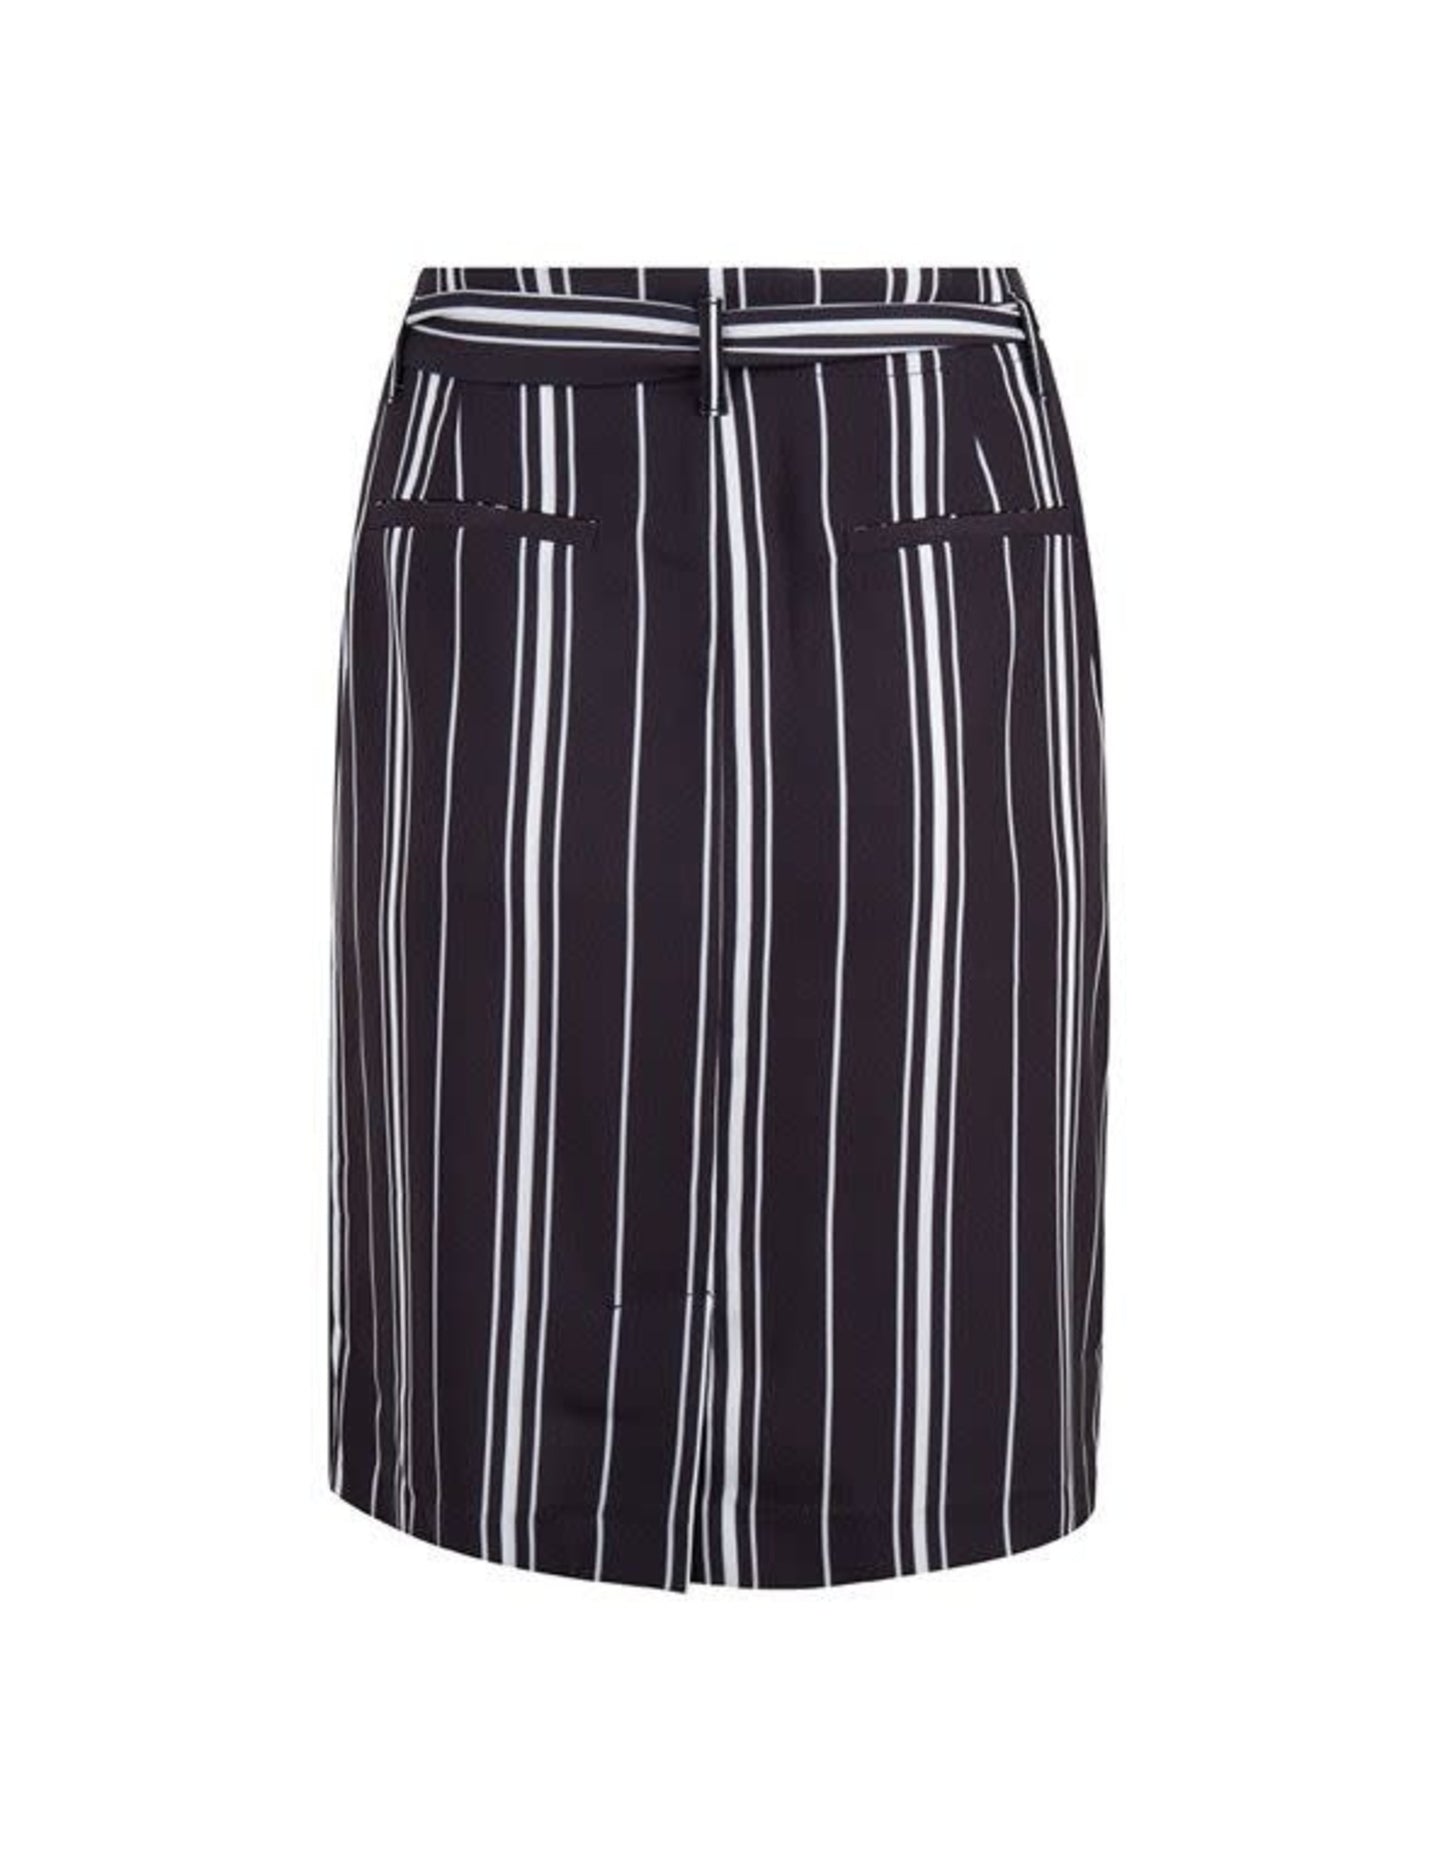 esqualo-esqualo-striped-skirt (1).jpg